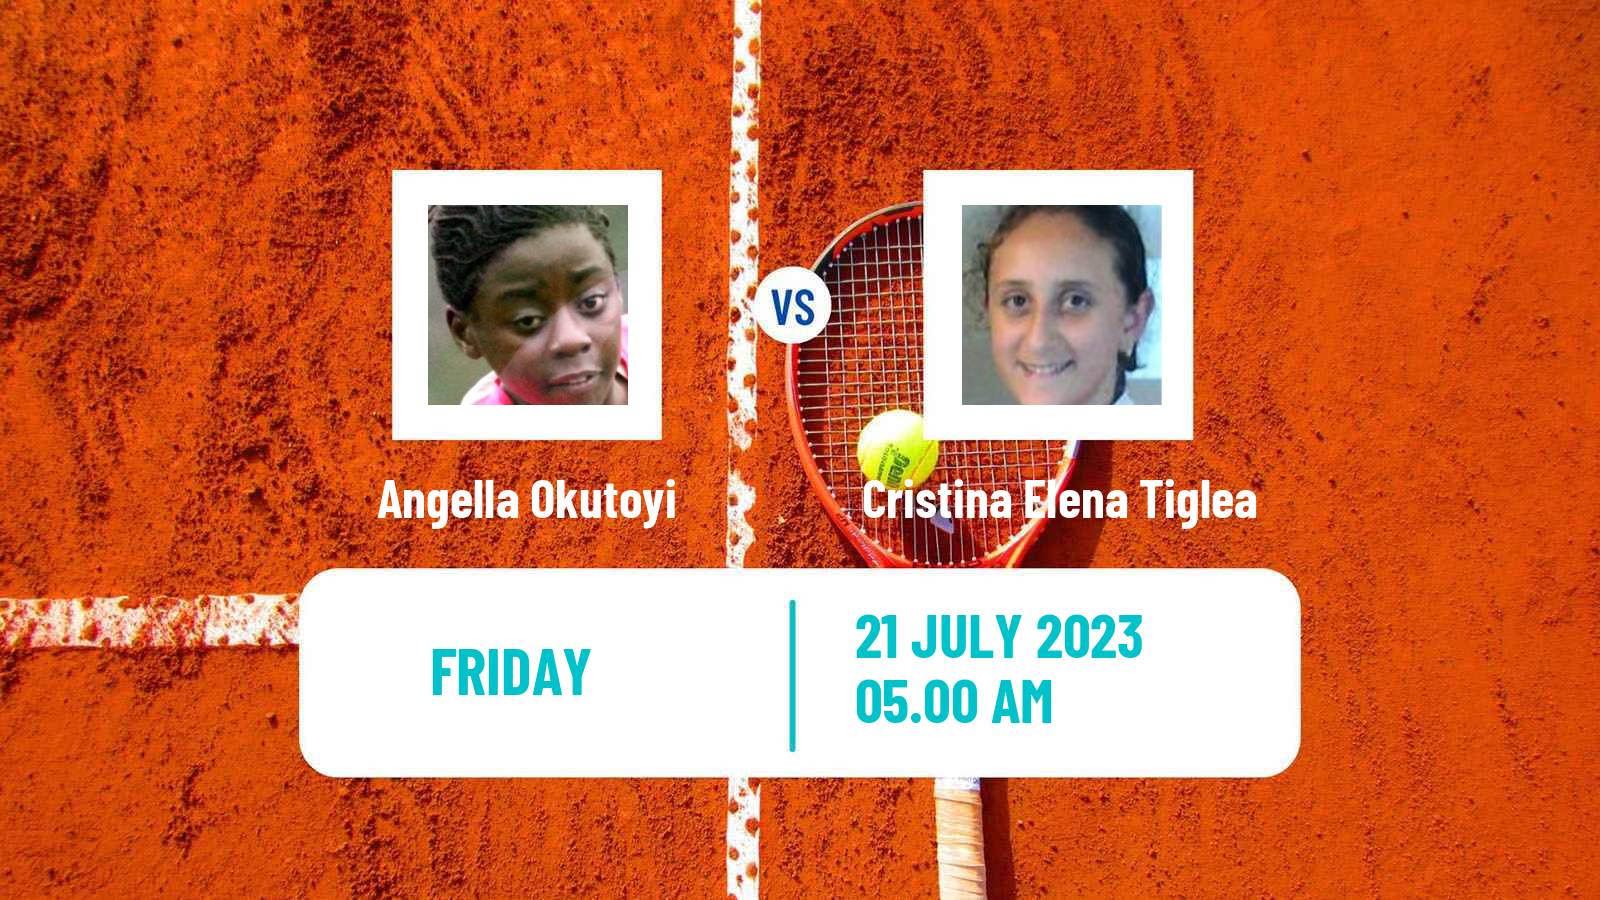 Tennis ITF W15 Monastir 24 Women Angella Okutoyi - Cristina Elena Tiglea